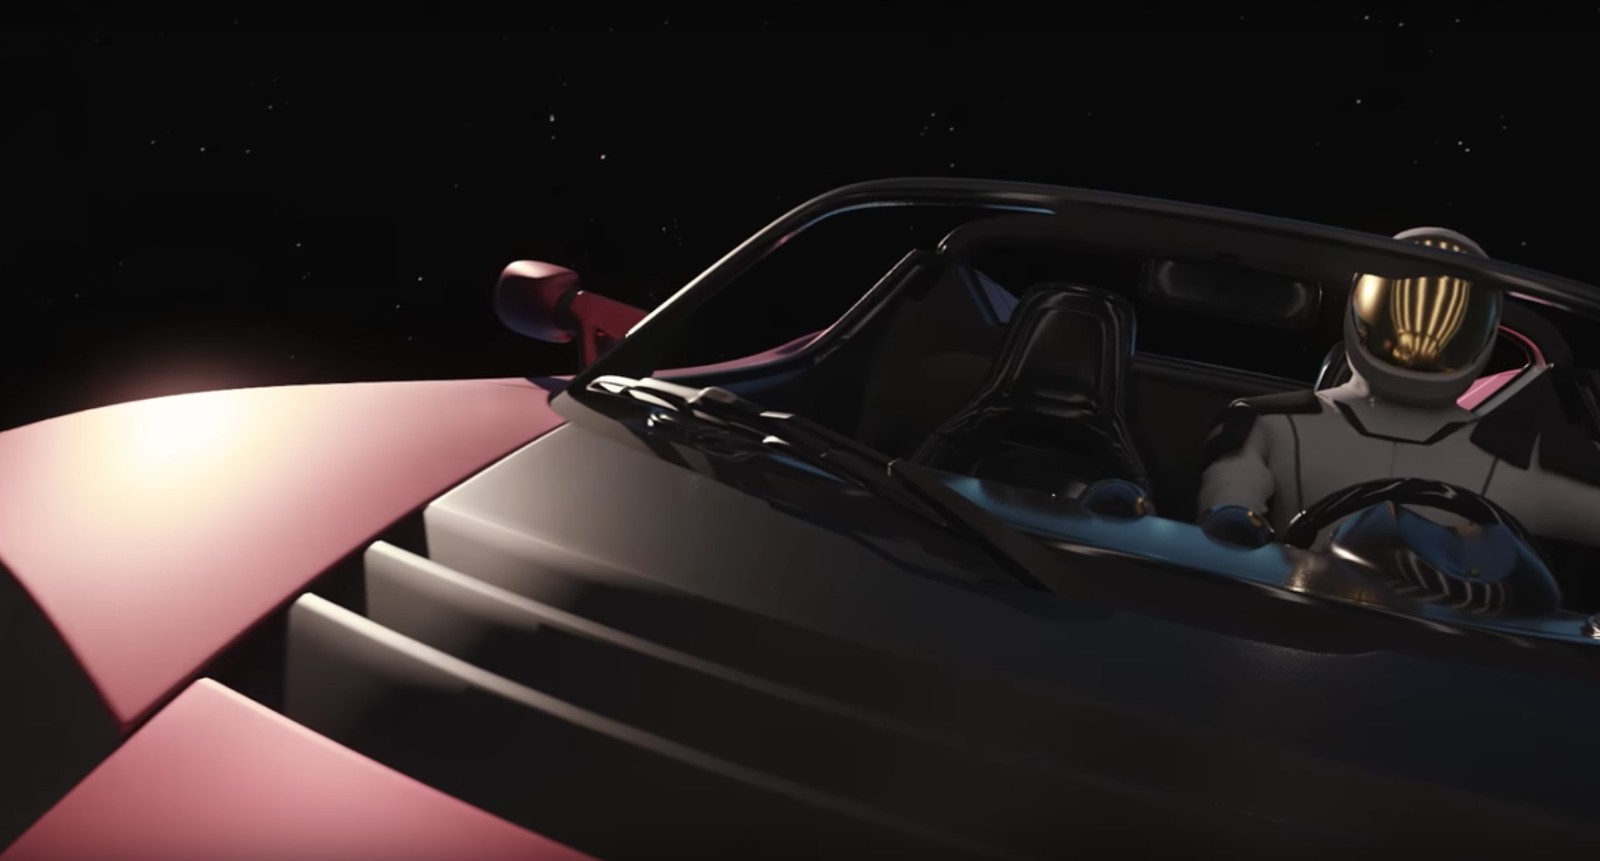 Wo befindet sich eigentlich gerade der Tesla Roadster im All? | Dude, where's my luxury Tesla? 